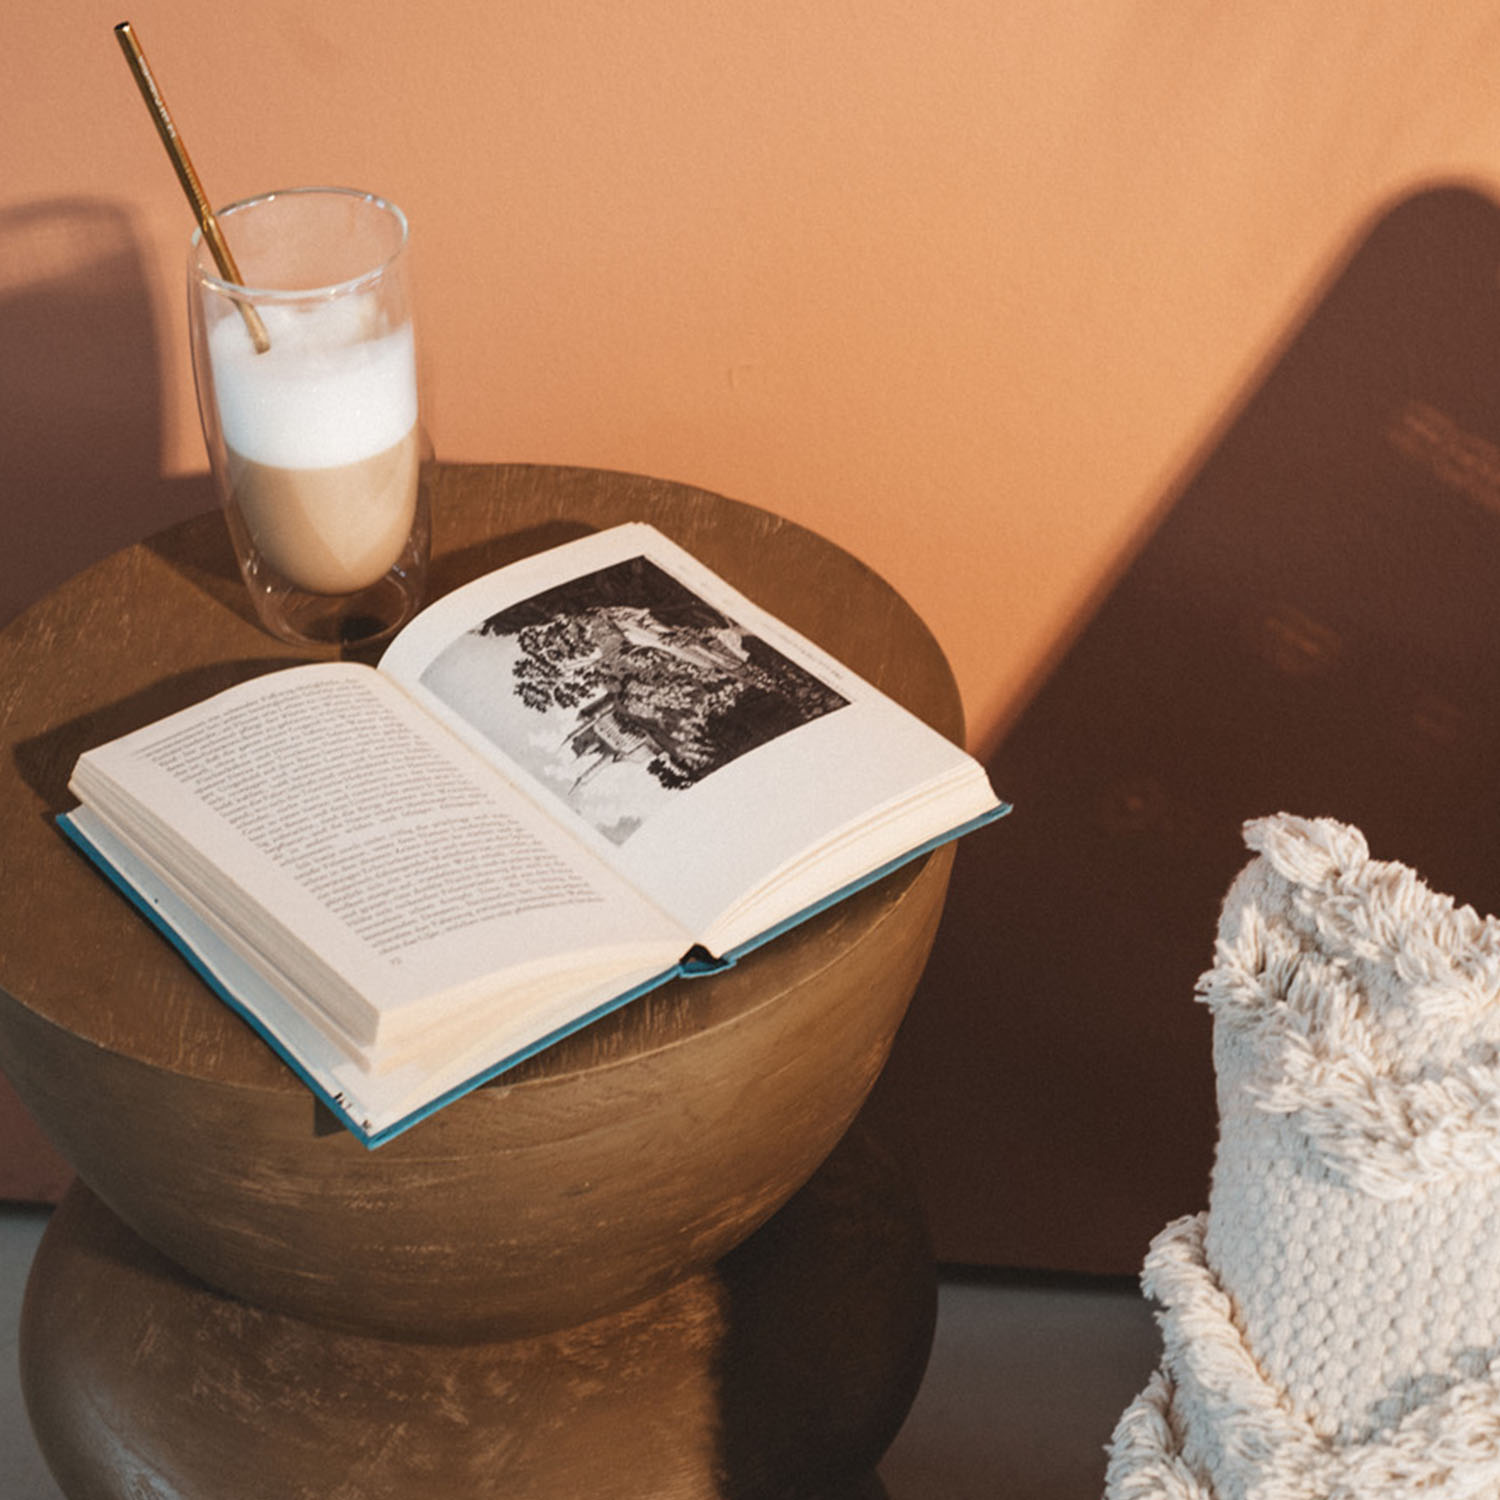 Kaffe mit einem Buch auf einem Tisch